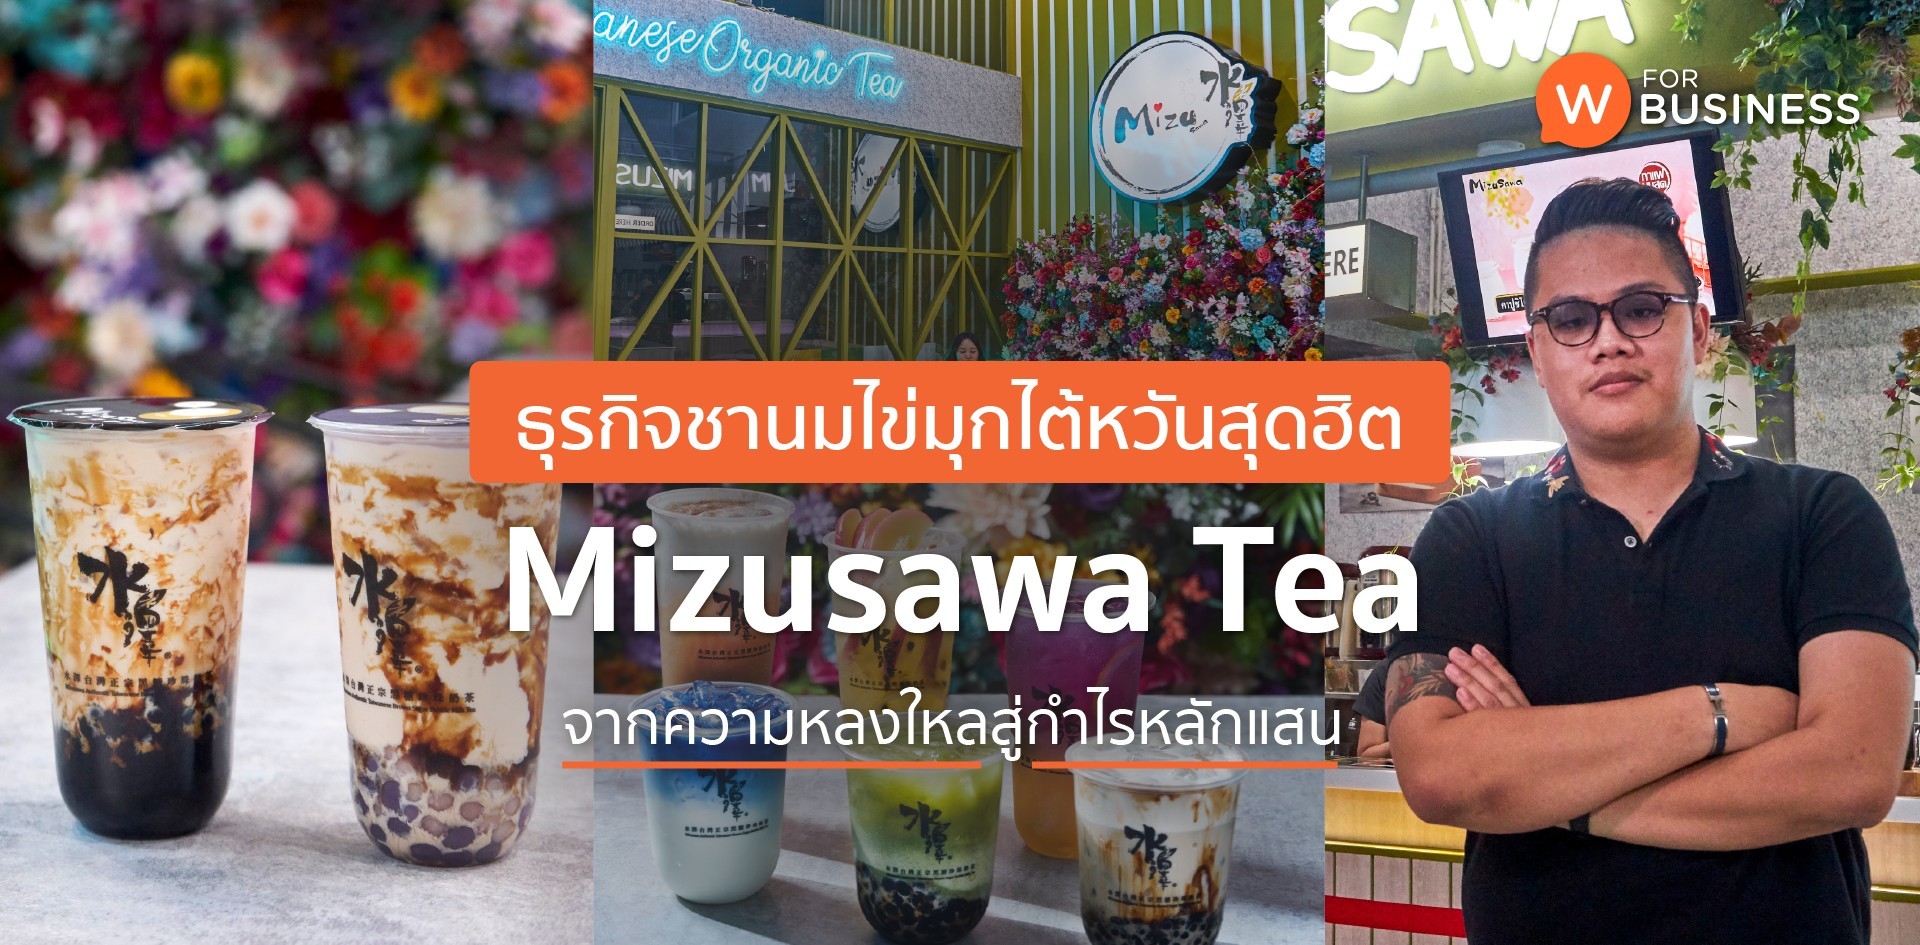 ธุรกิจชานมไข่มุกไต้หวันสุดฮิต Mizusawa Tea จากความหลงใหลสู่กำไรหลักแสน